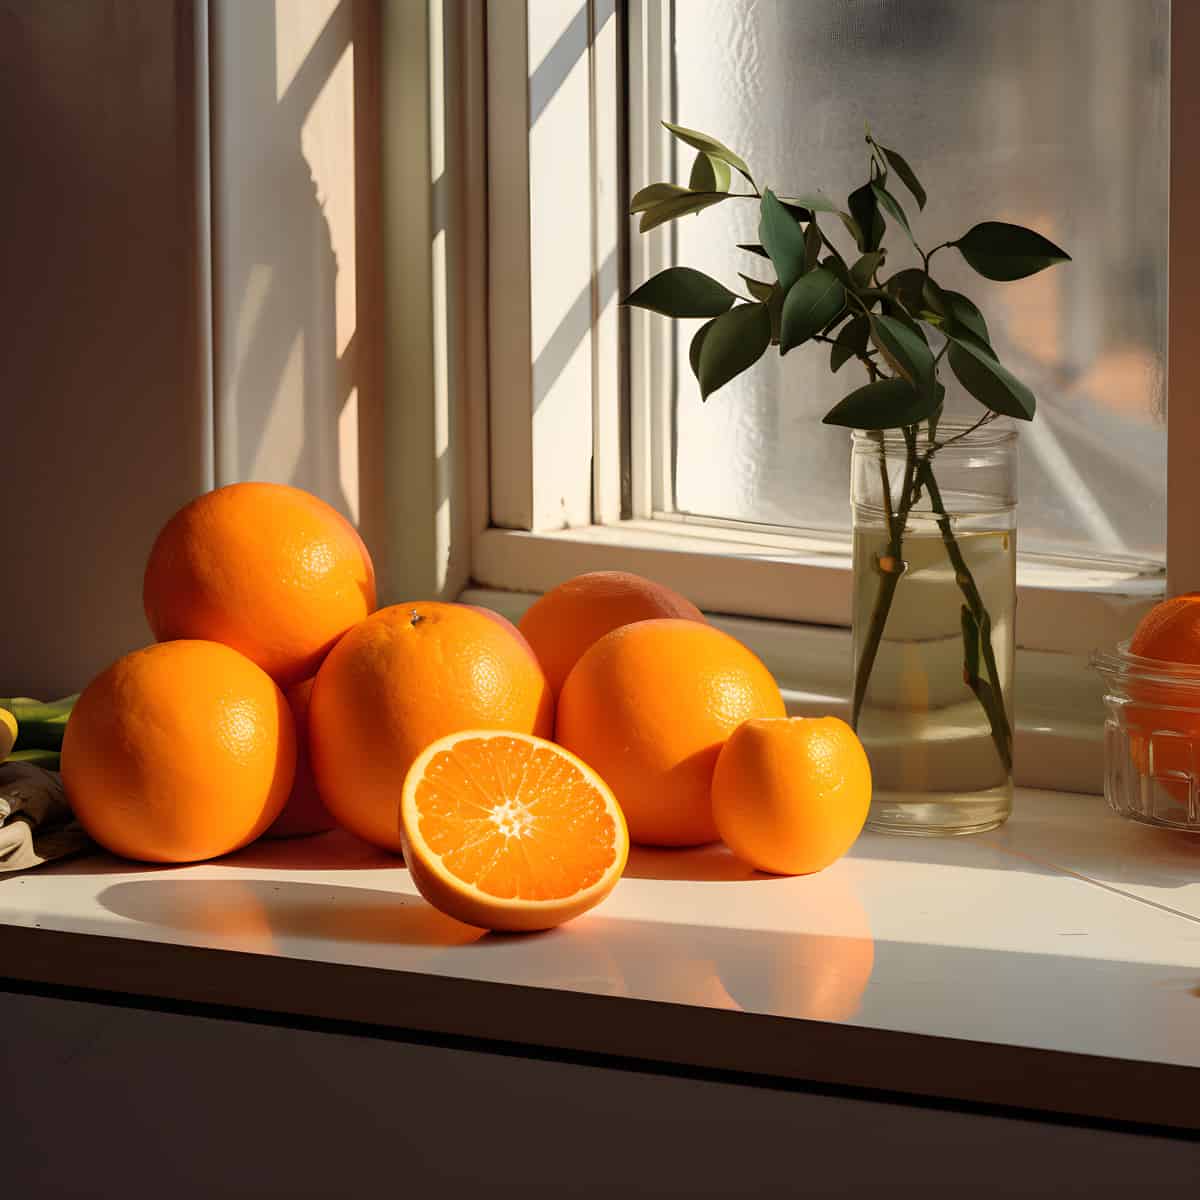 Wild Orange on a kitchen counter